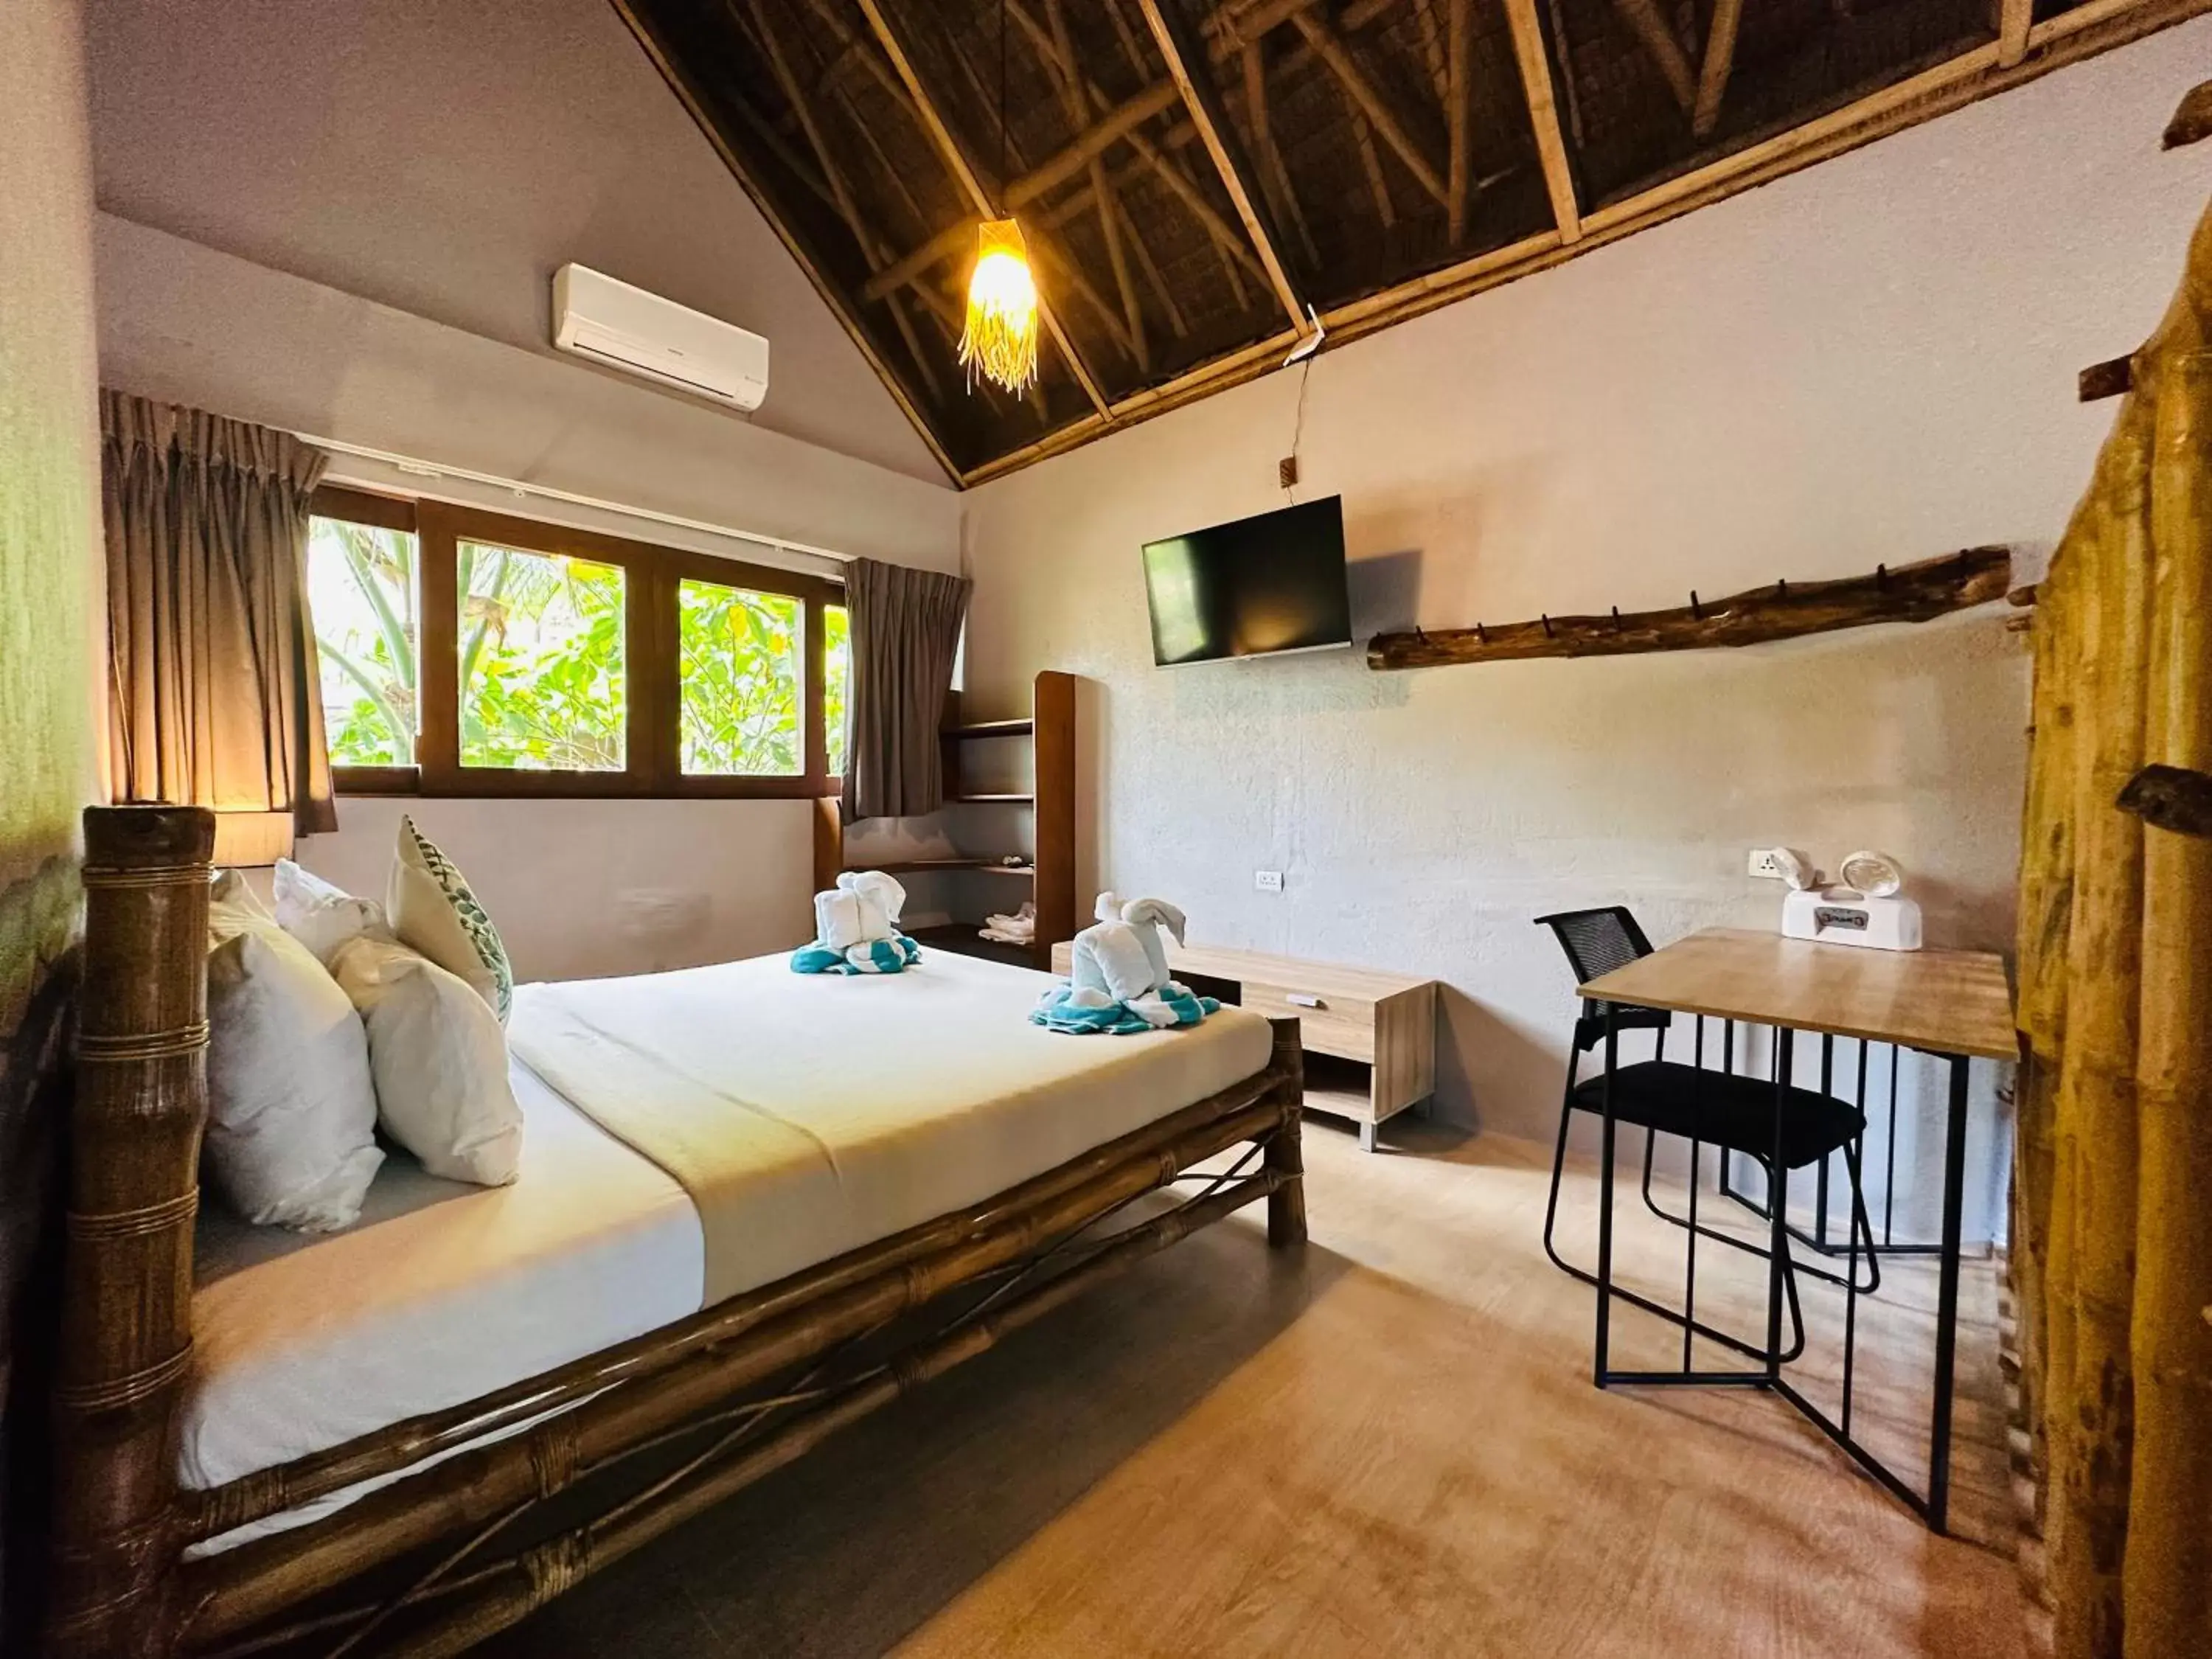 Bed in Buko Beach Resort